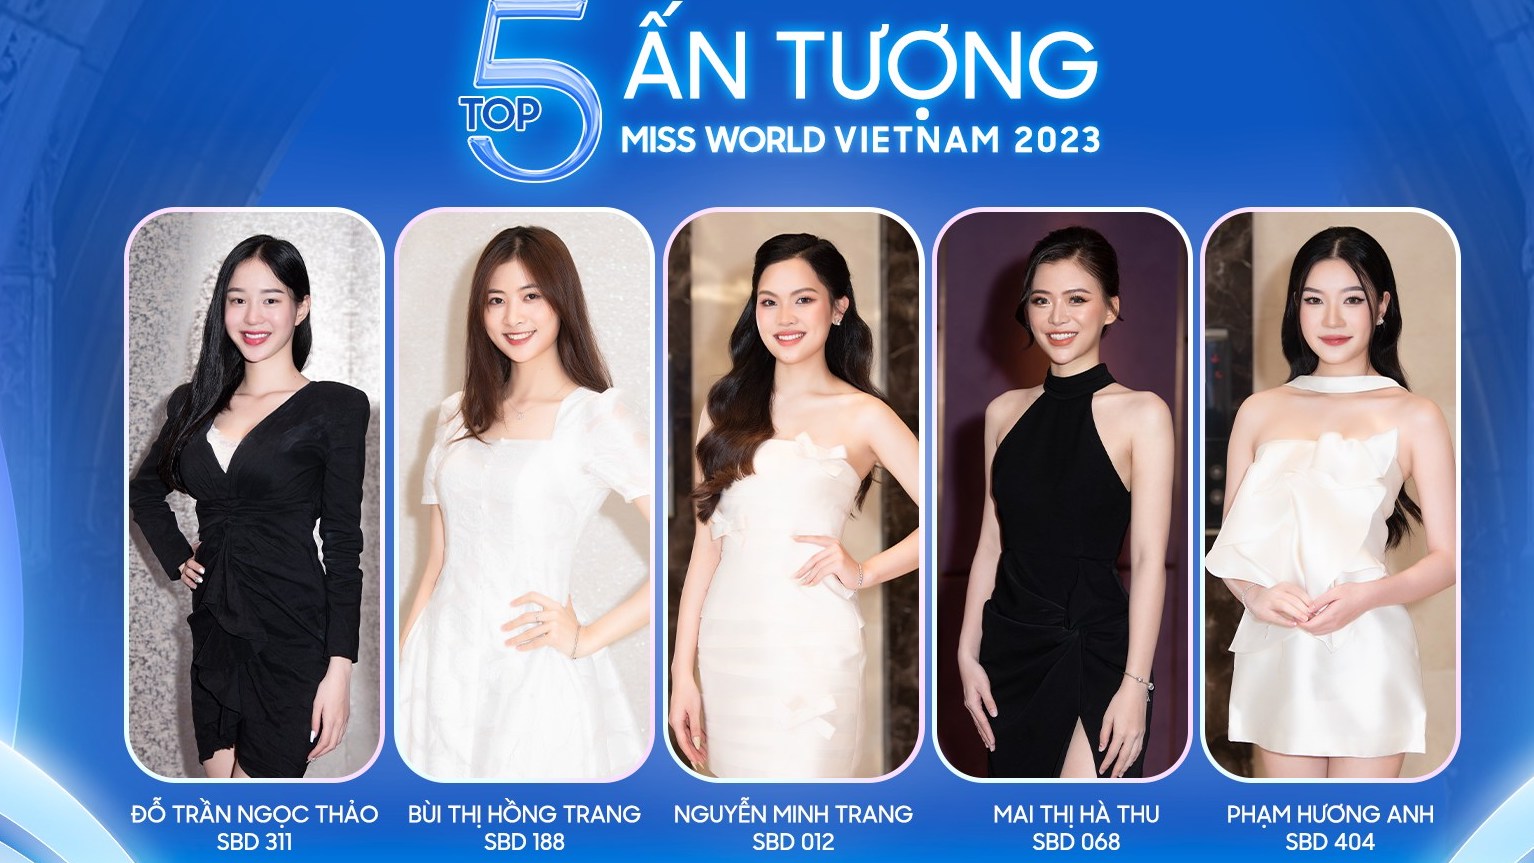 Chân dung người đẹp họ Đỗ - từng là 'đối thủ' của Thanh Thủy vừa vươn lên đứng đầu Top 5 Miss World Vietnam 2023 - Ảnh 2.